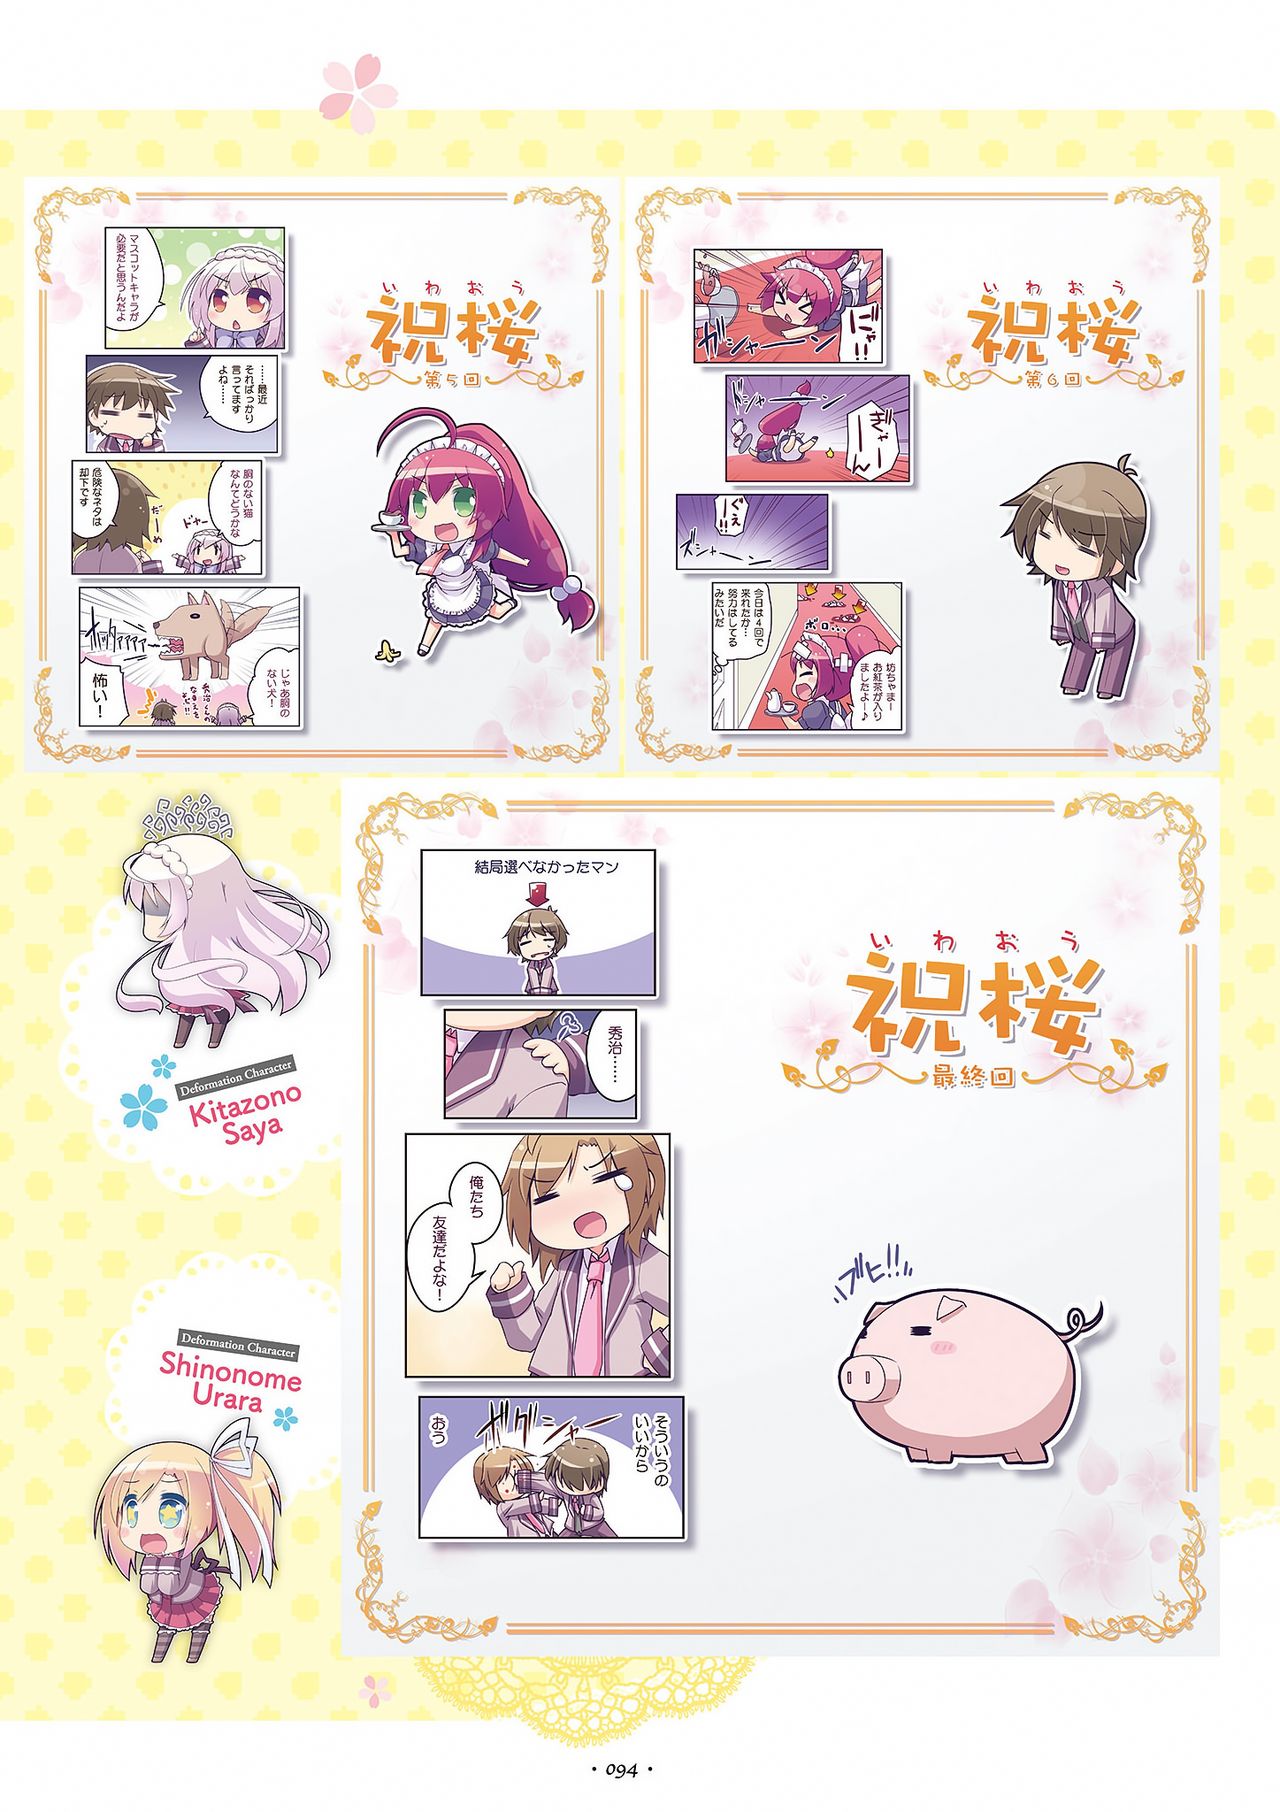 Shukufuku no Kane no Oto wa, Sakura-iro no Kaze to Tomo ni Visual Fanbook 祝福の鐘の音は、桜色の風と共に ビジュアルファンブック